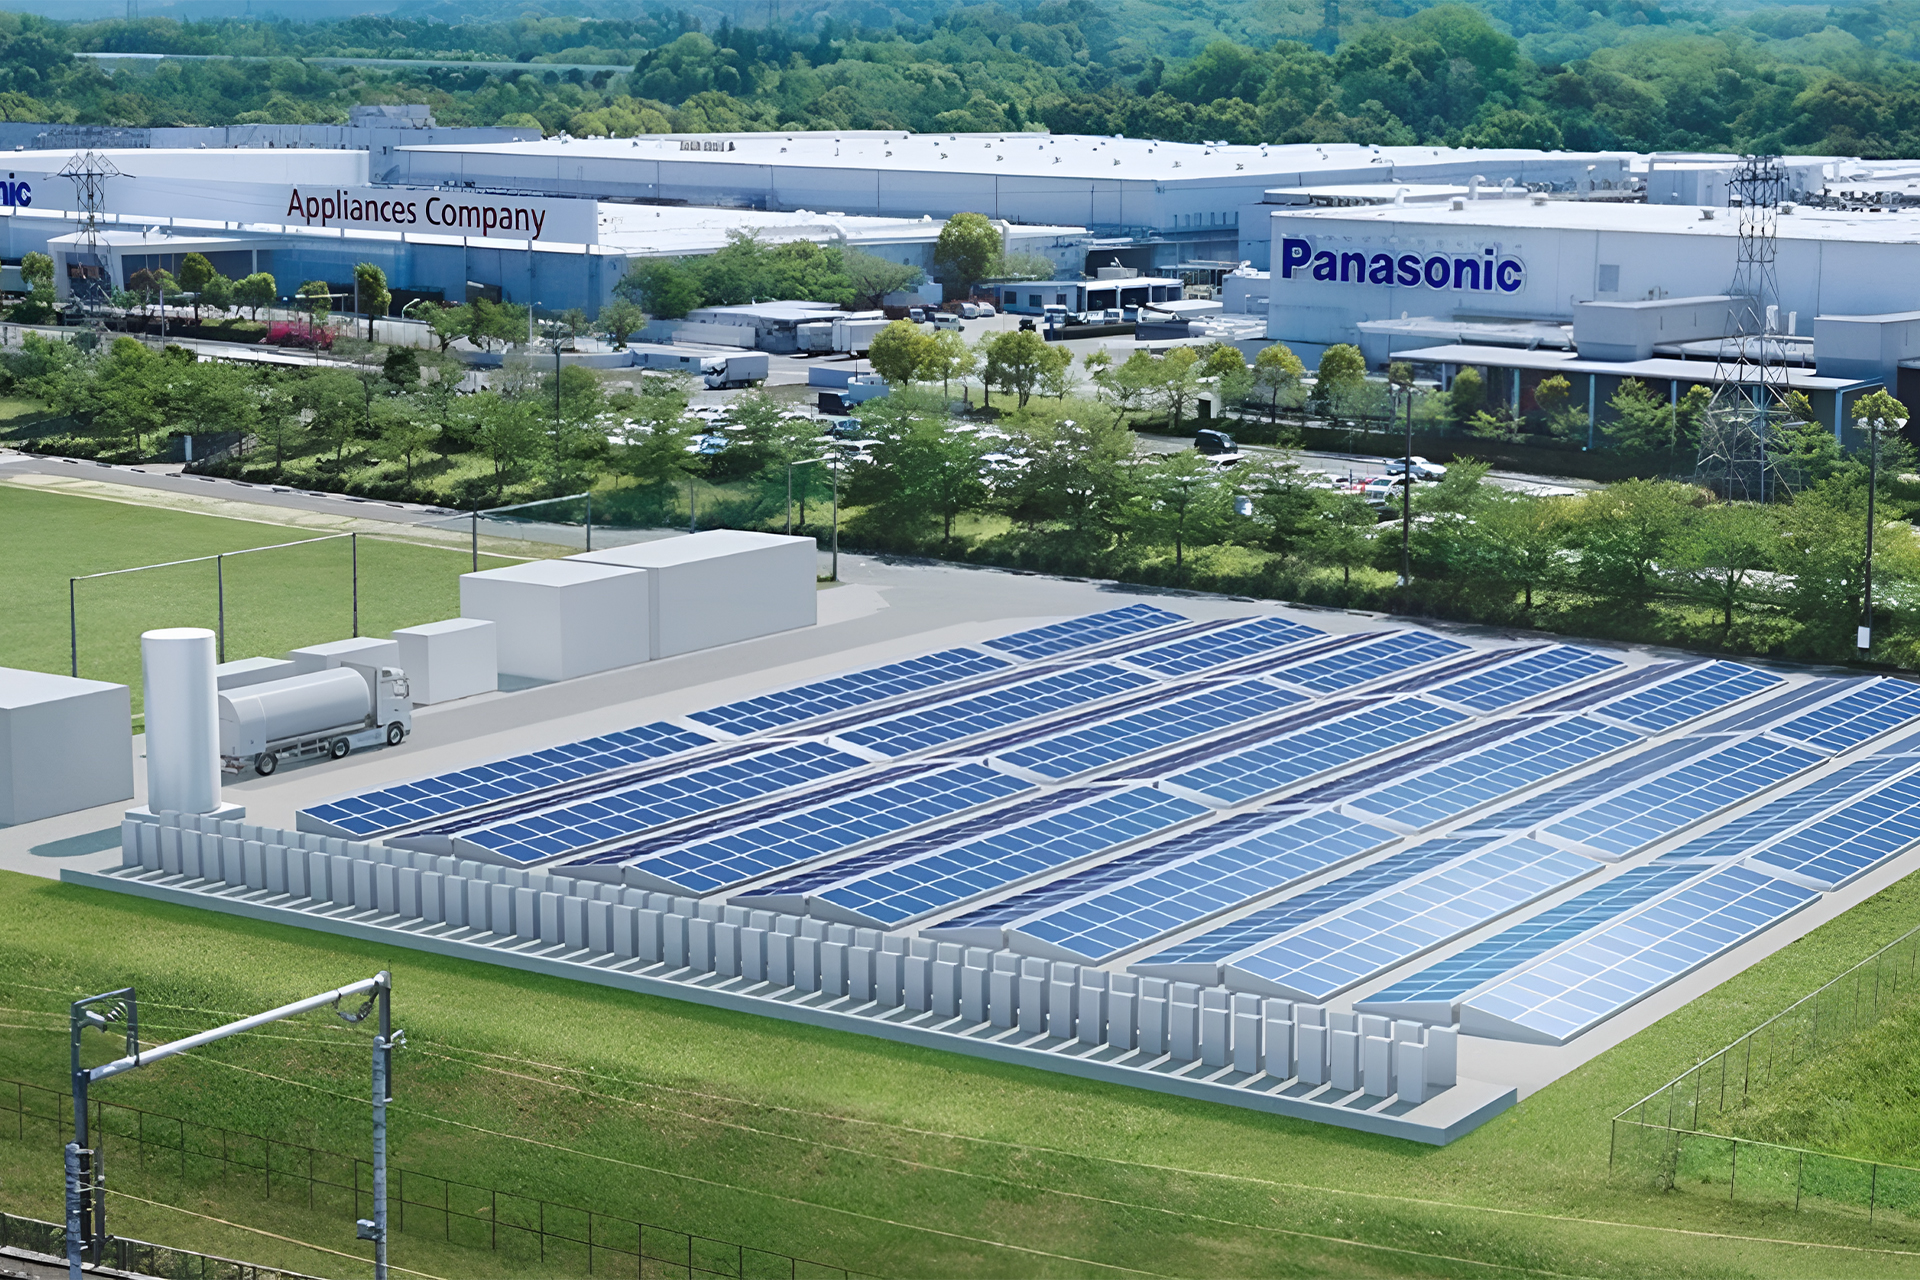 Panasonic exibe, com orgulho, sua fábrica alimentada 100% de energia renovável (solar e hidrogênio), produção é a única da categoria no mundo